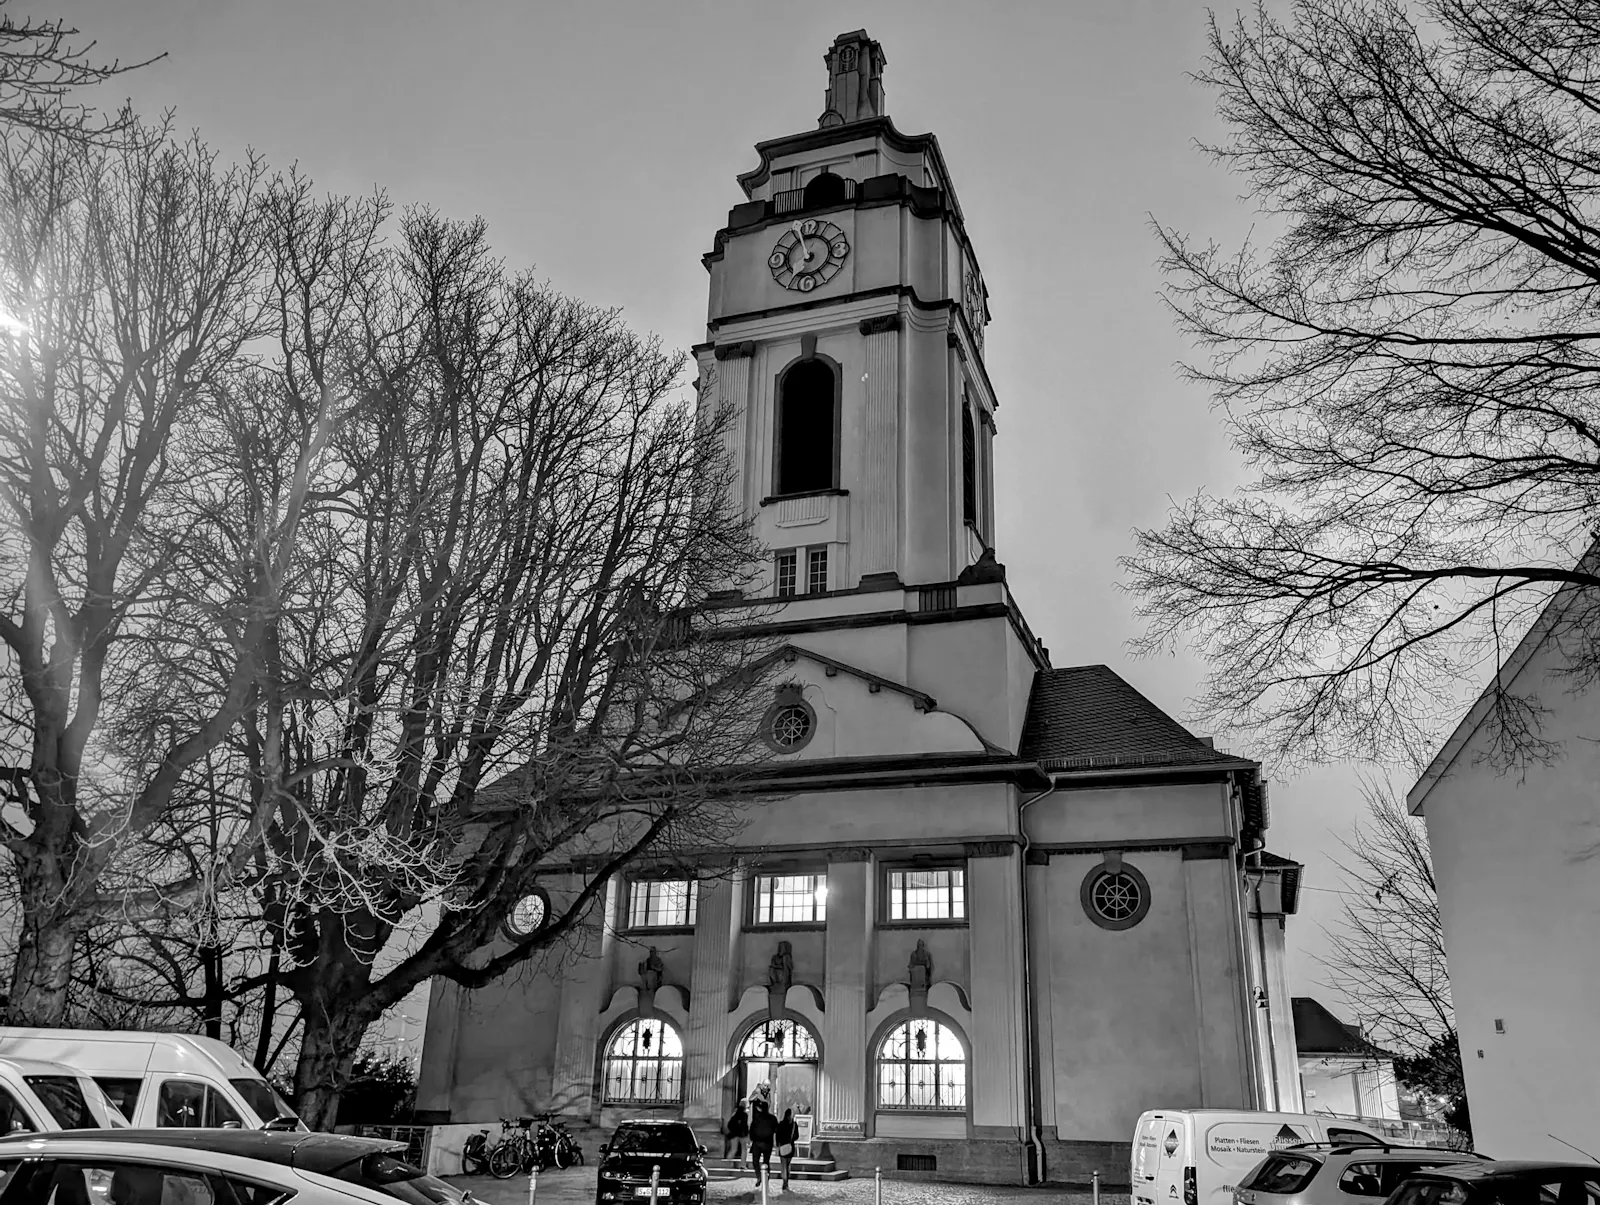 In Gaisburg ist über die Zukunft der Gemeinde und der Kirche nachgedacht worden. Foto: Jürgen Brand